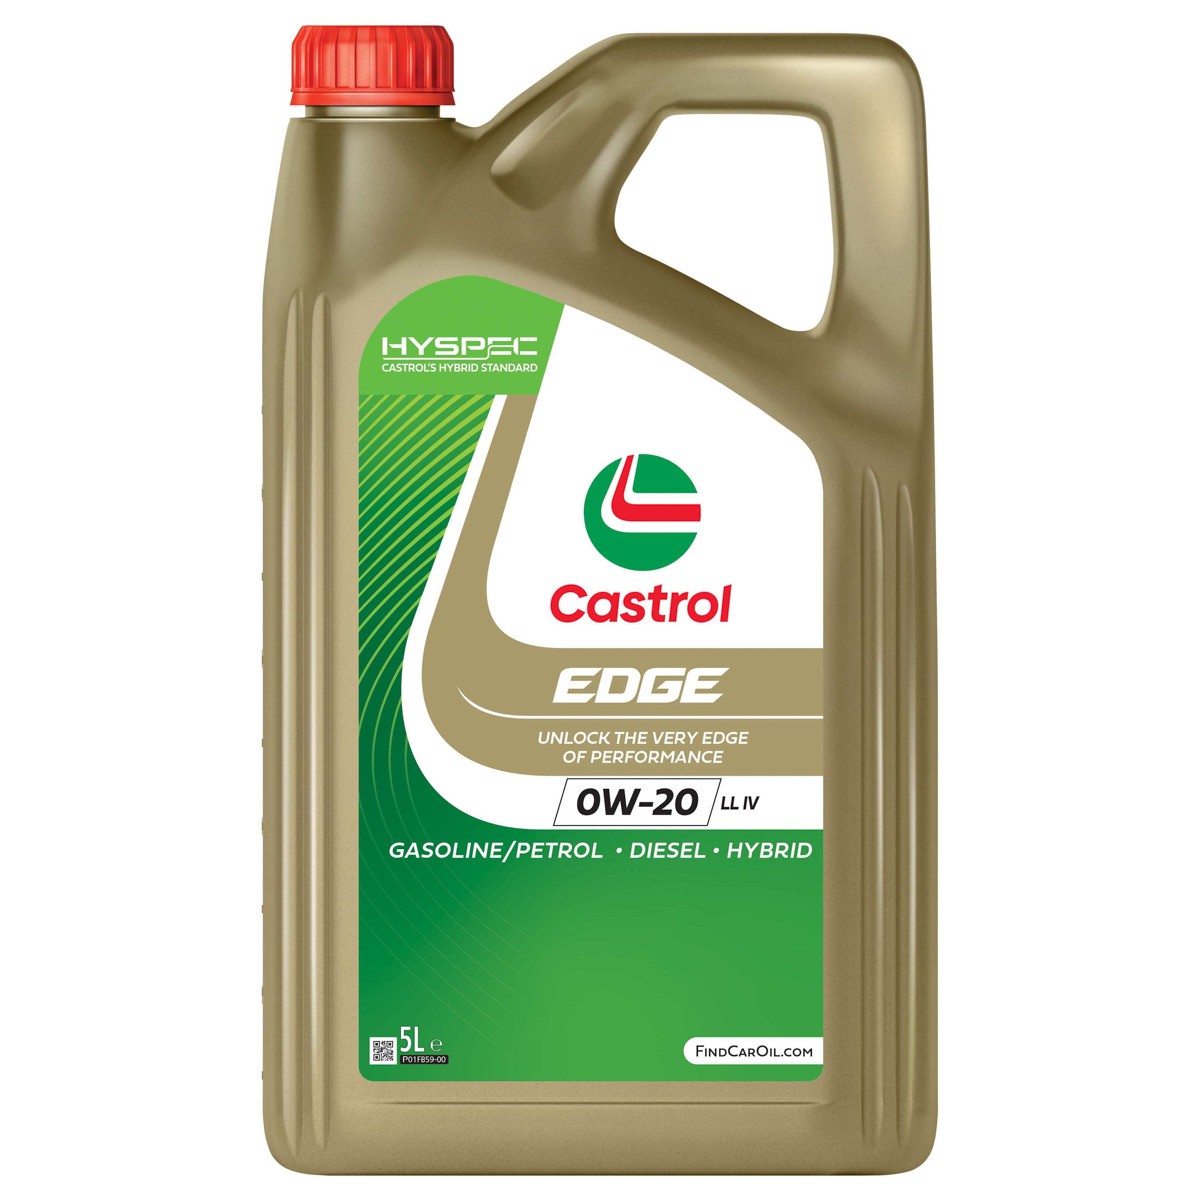 Automobile oil 0W-20 longlife petrol - 15F615 CASTROL EDGE, LL IV